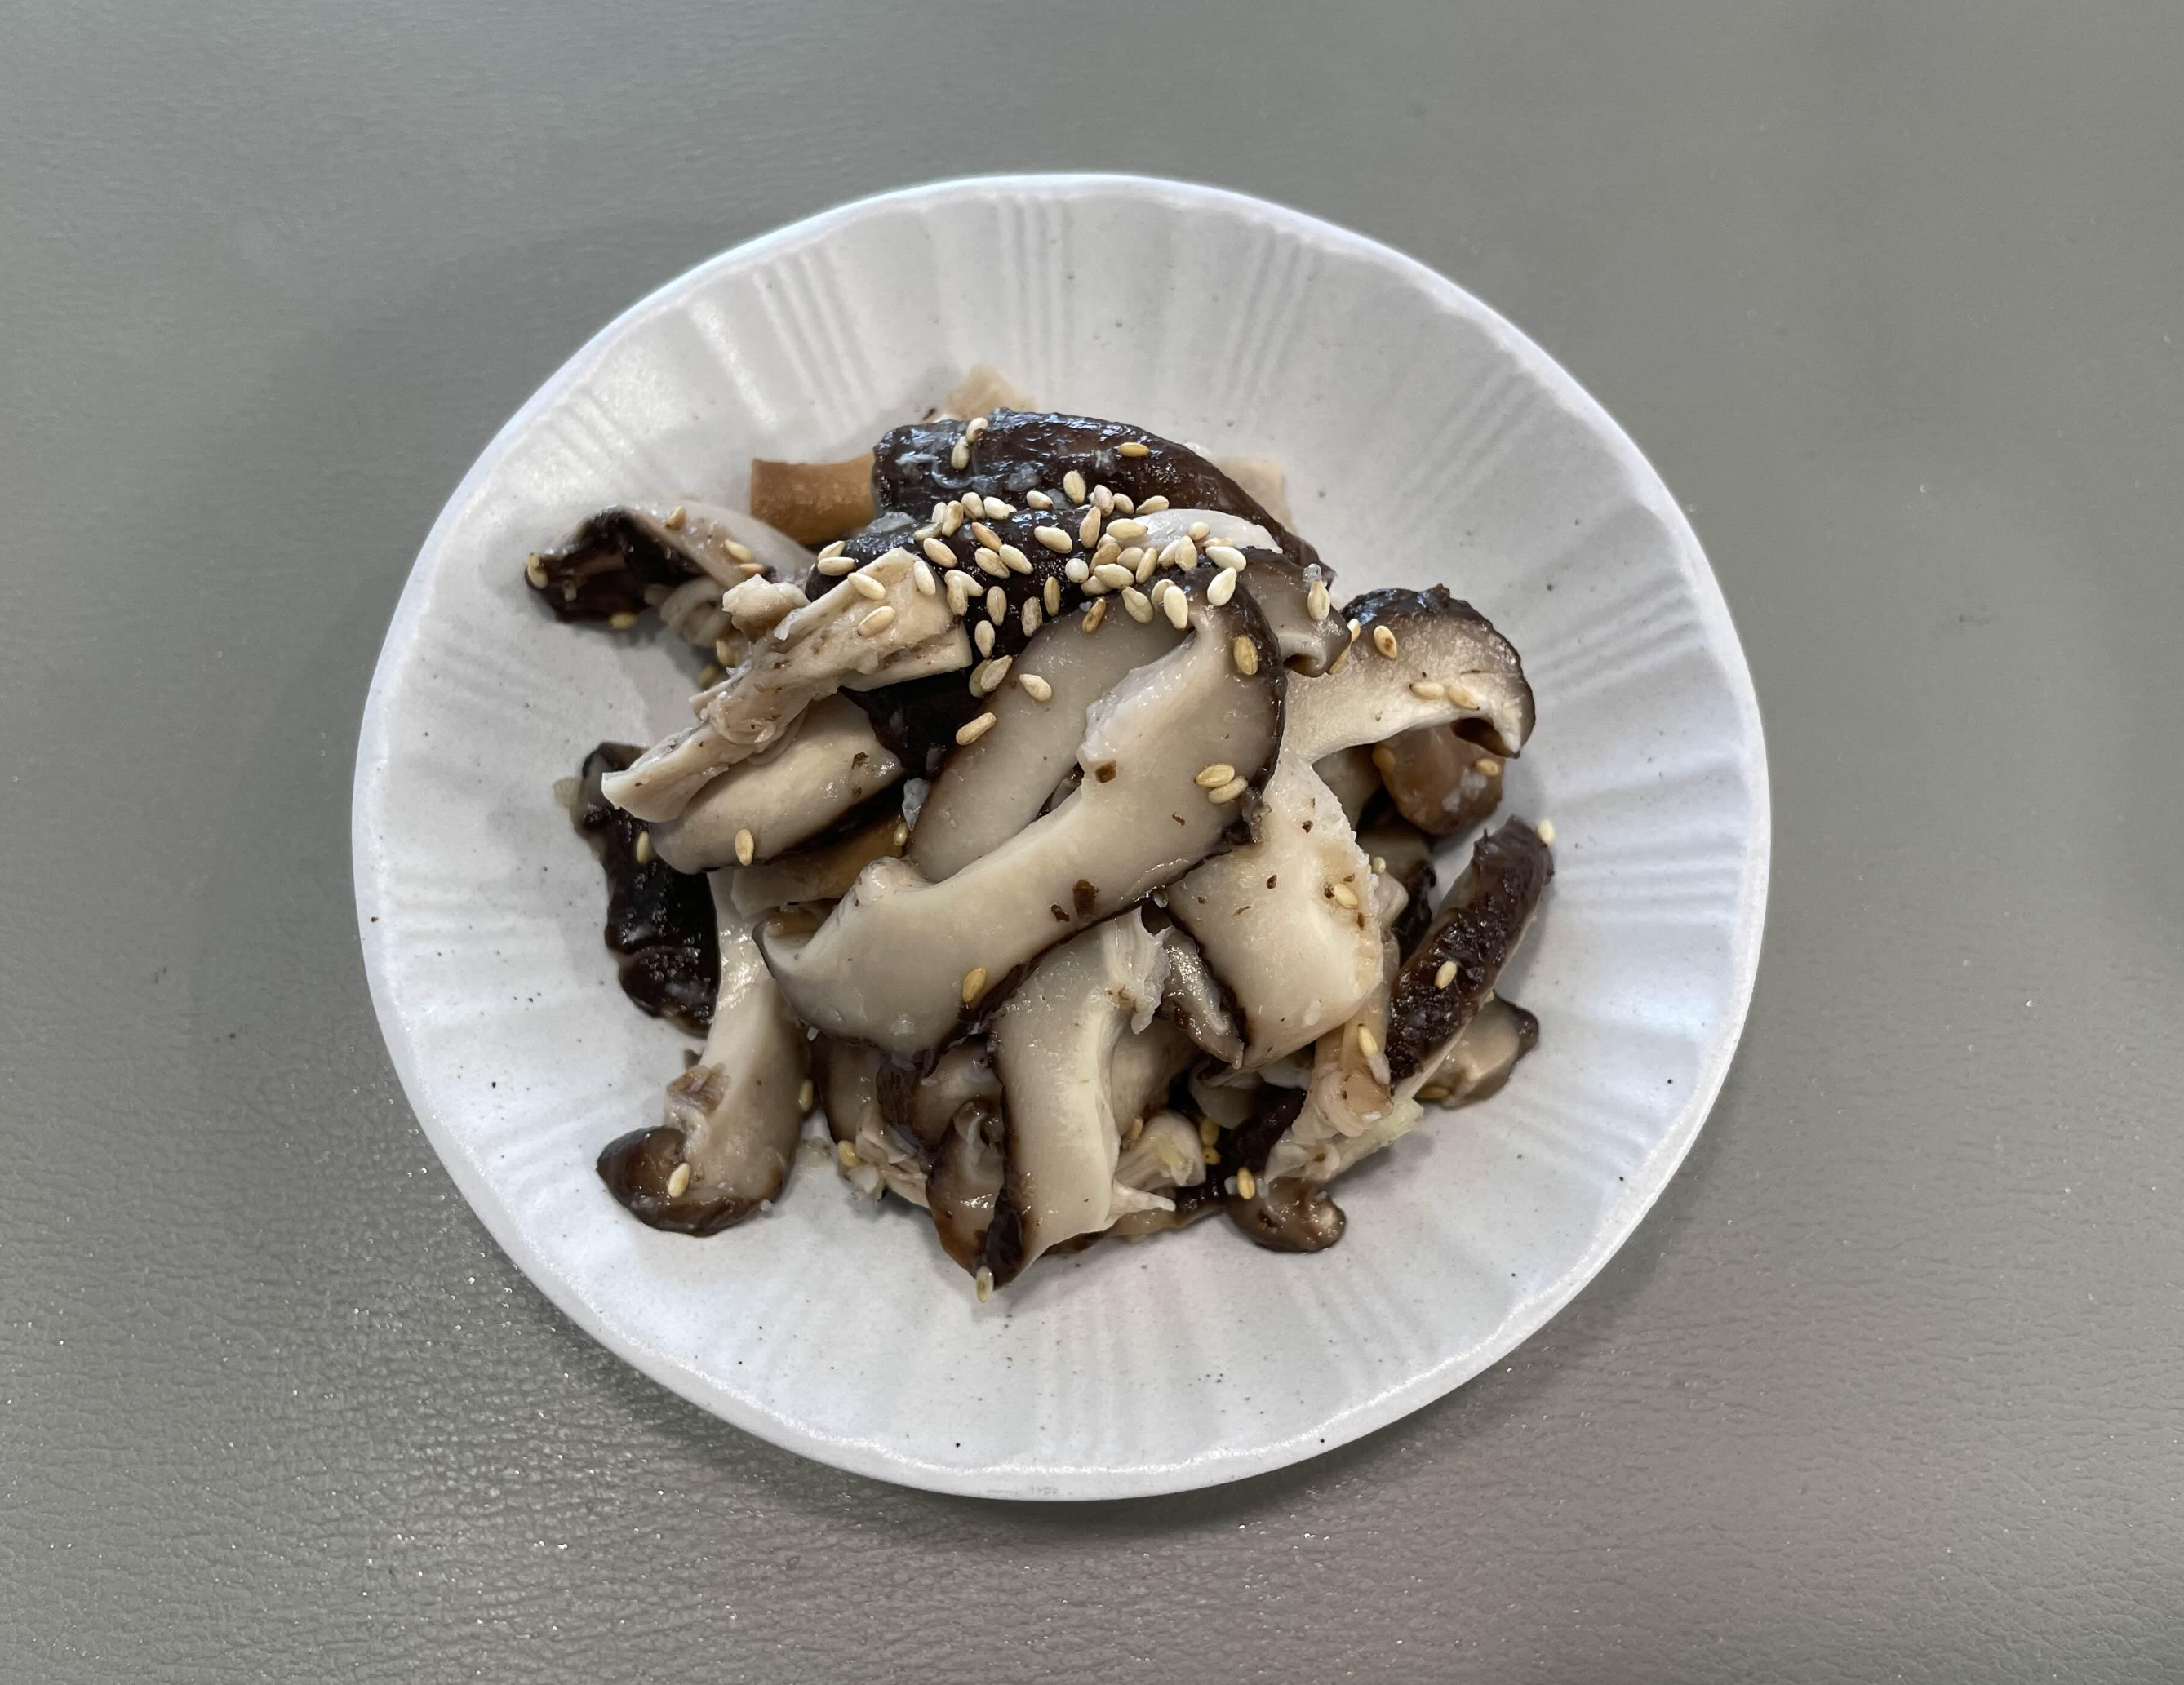 표고버섯 무침 볶음 만드는 법